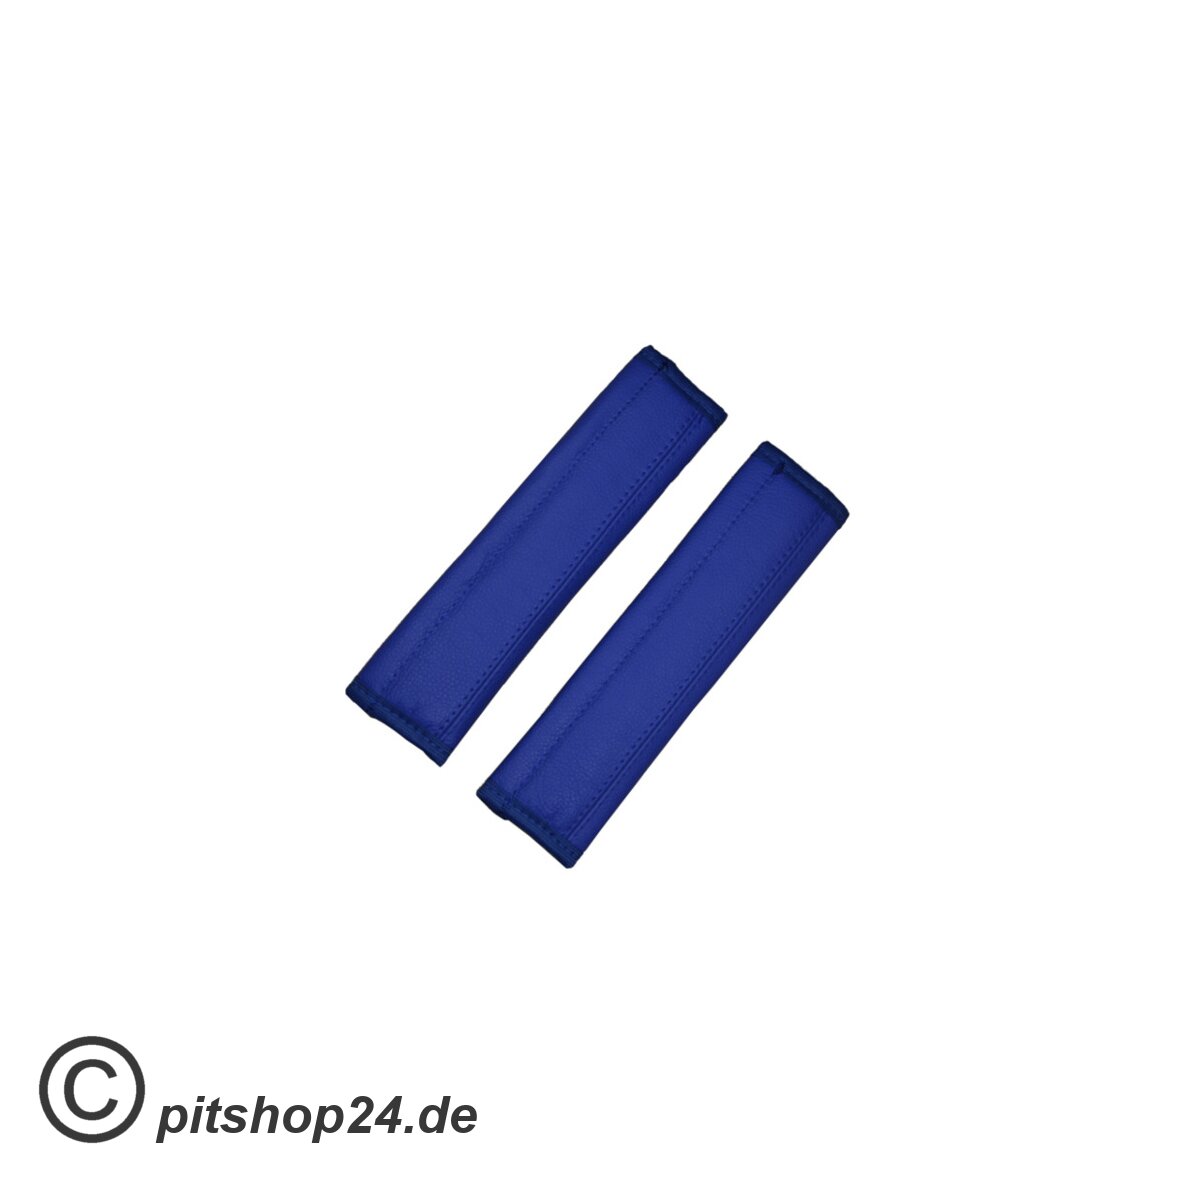 https://pitshop24.de/media/image/product/708/lg/gurtschoner-gurtpolster-echt-leder-blau-gurtschoner.jpg